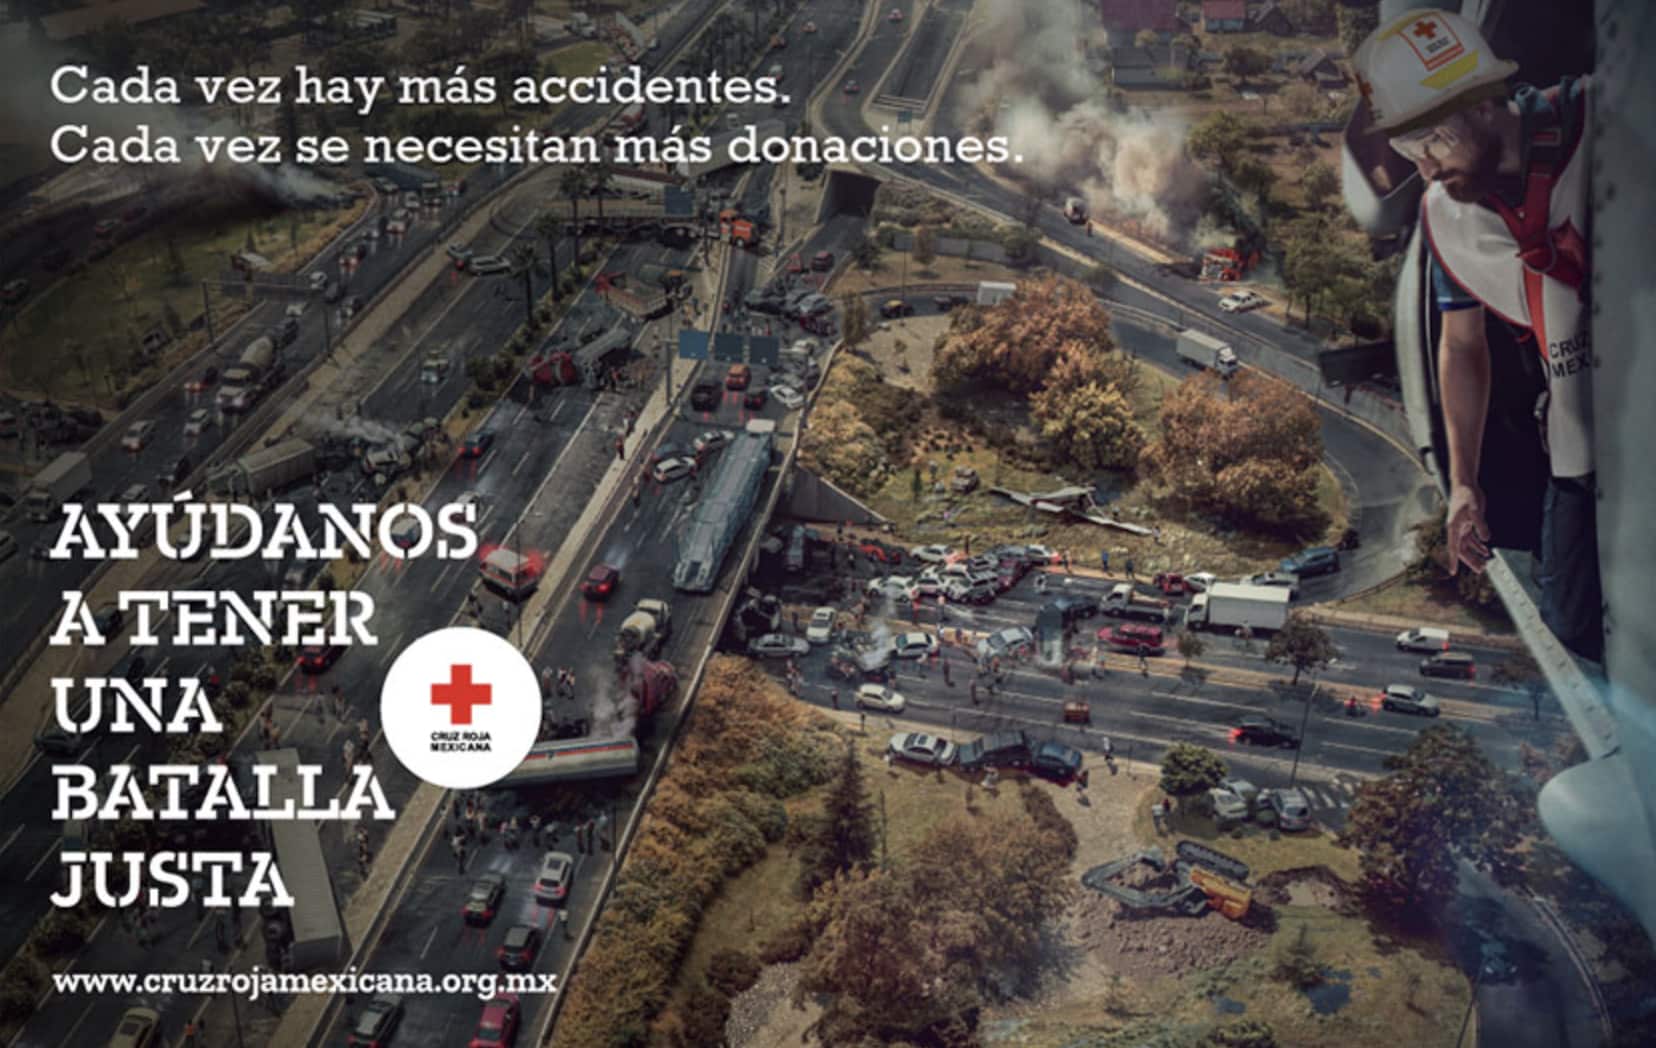 Ejemplo de diseño publicitario extraordinario de Cruz Roja Mexicana